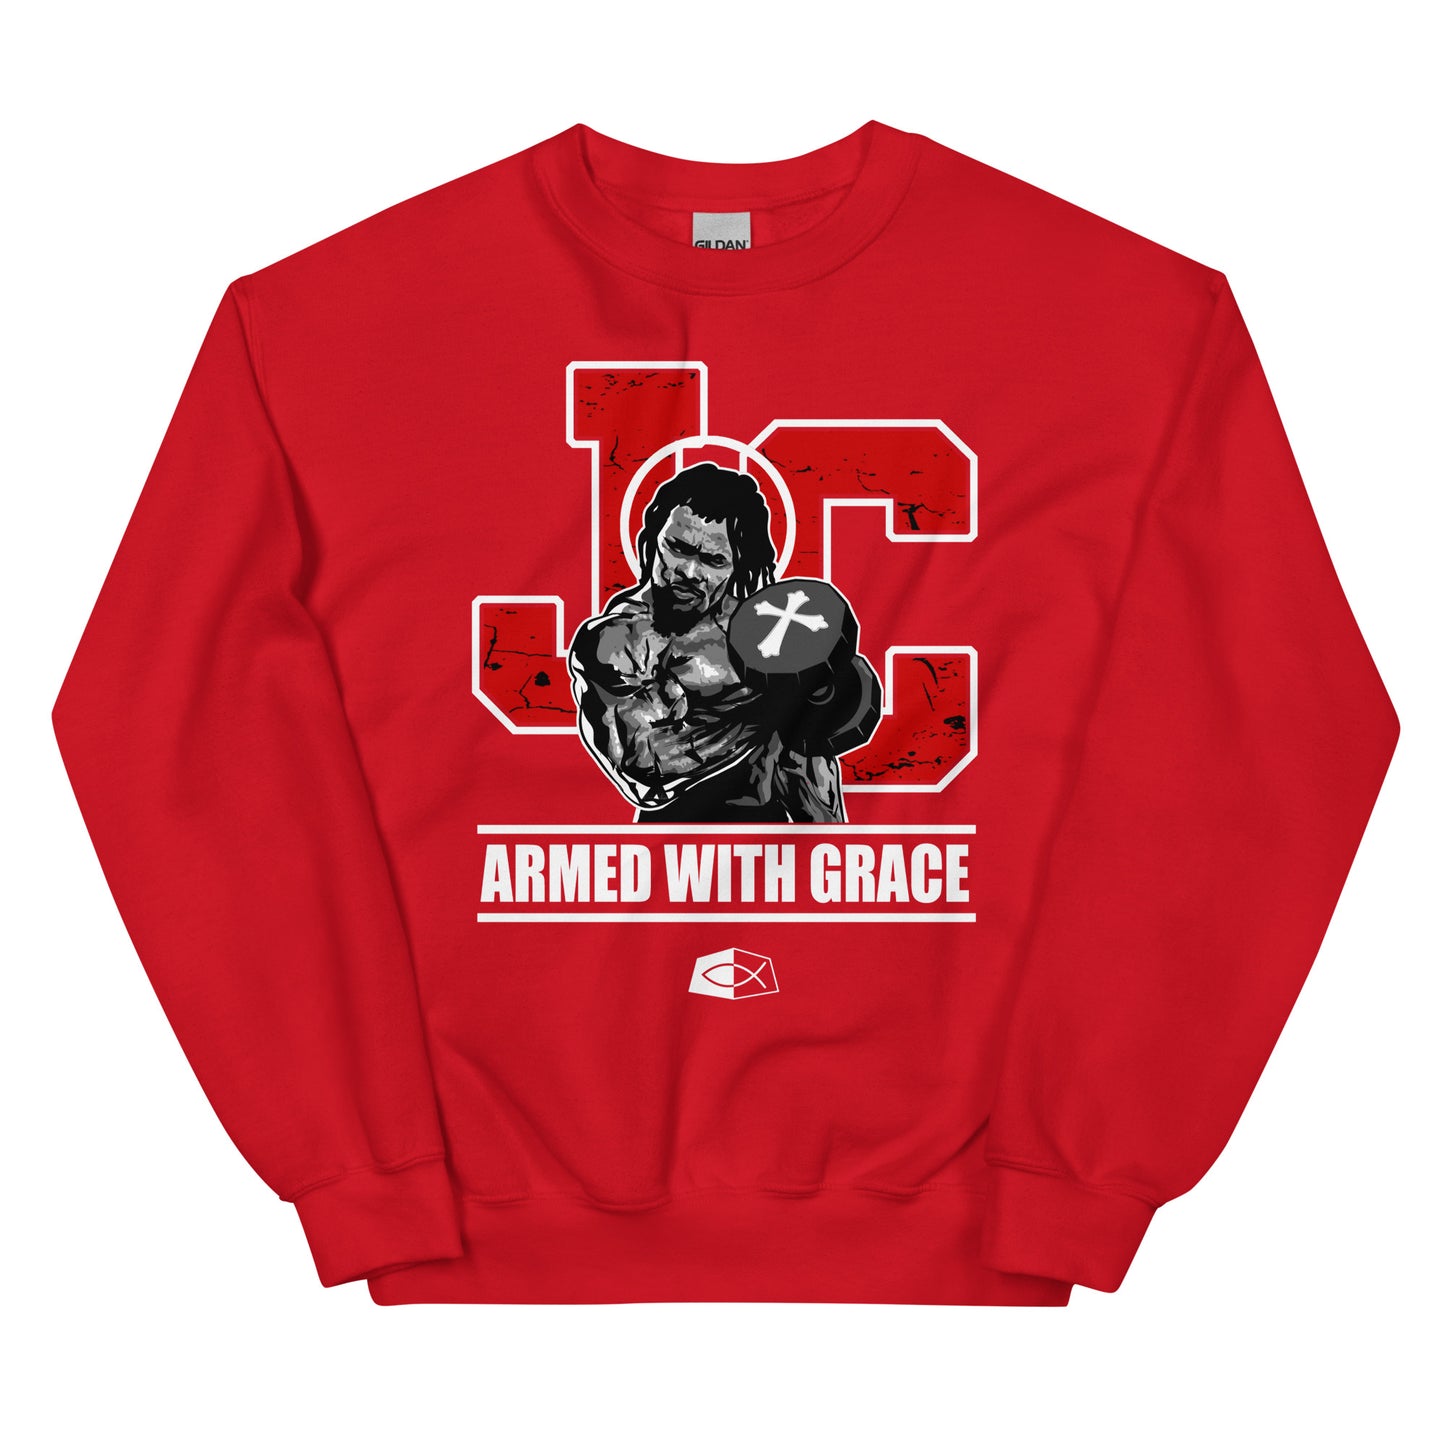 ARMED WITH GRACE- Men's premium sweatshirt